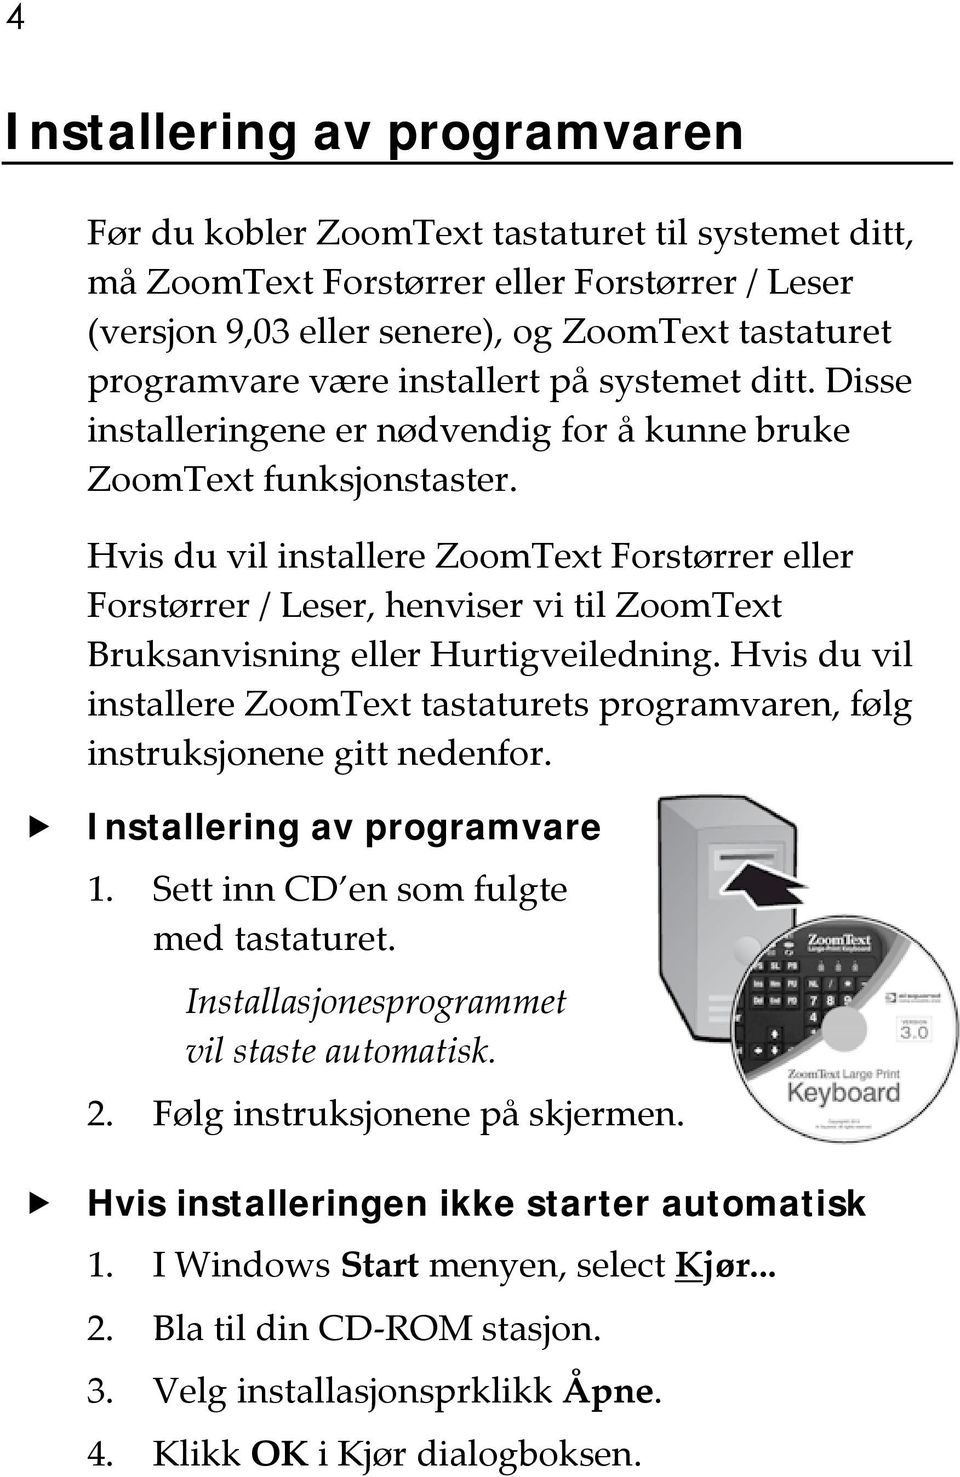 Hvis du vil installere ZoomText Forstørrer eller Forstørrer / Leser, henviser vi til ZoomText Bruksanvisning eller Hurtigveiledning.